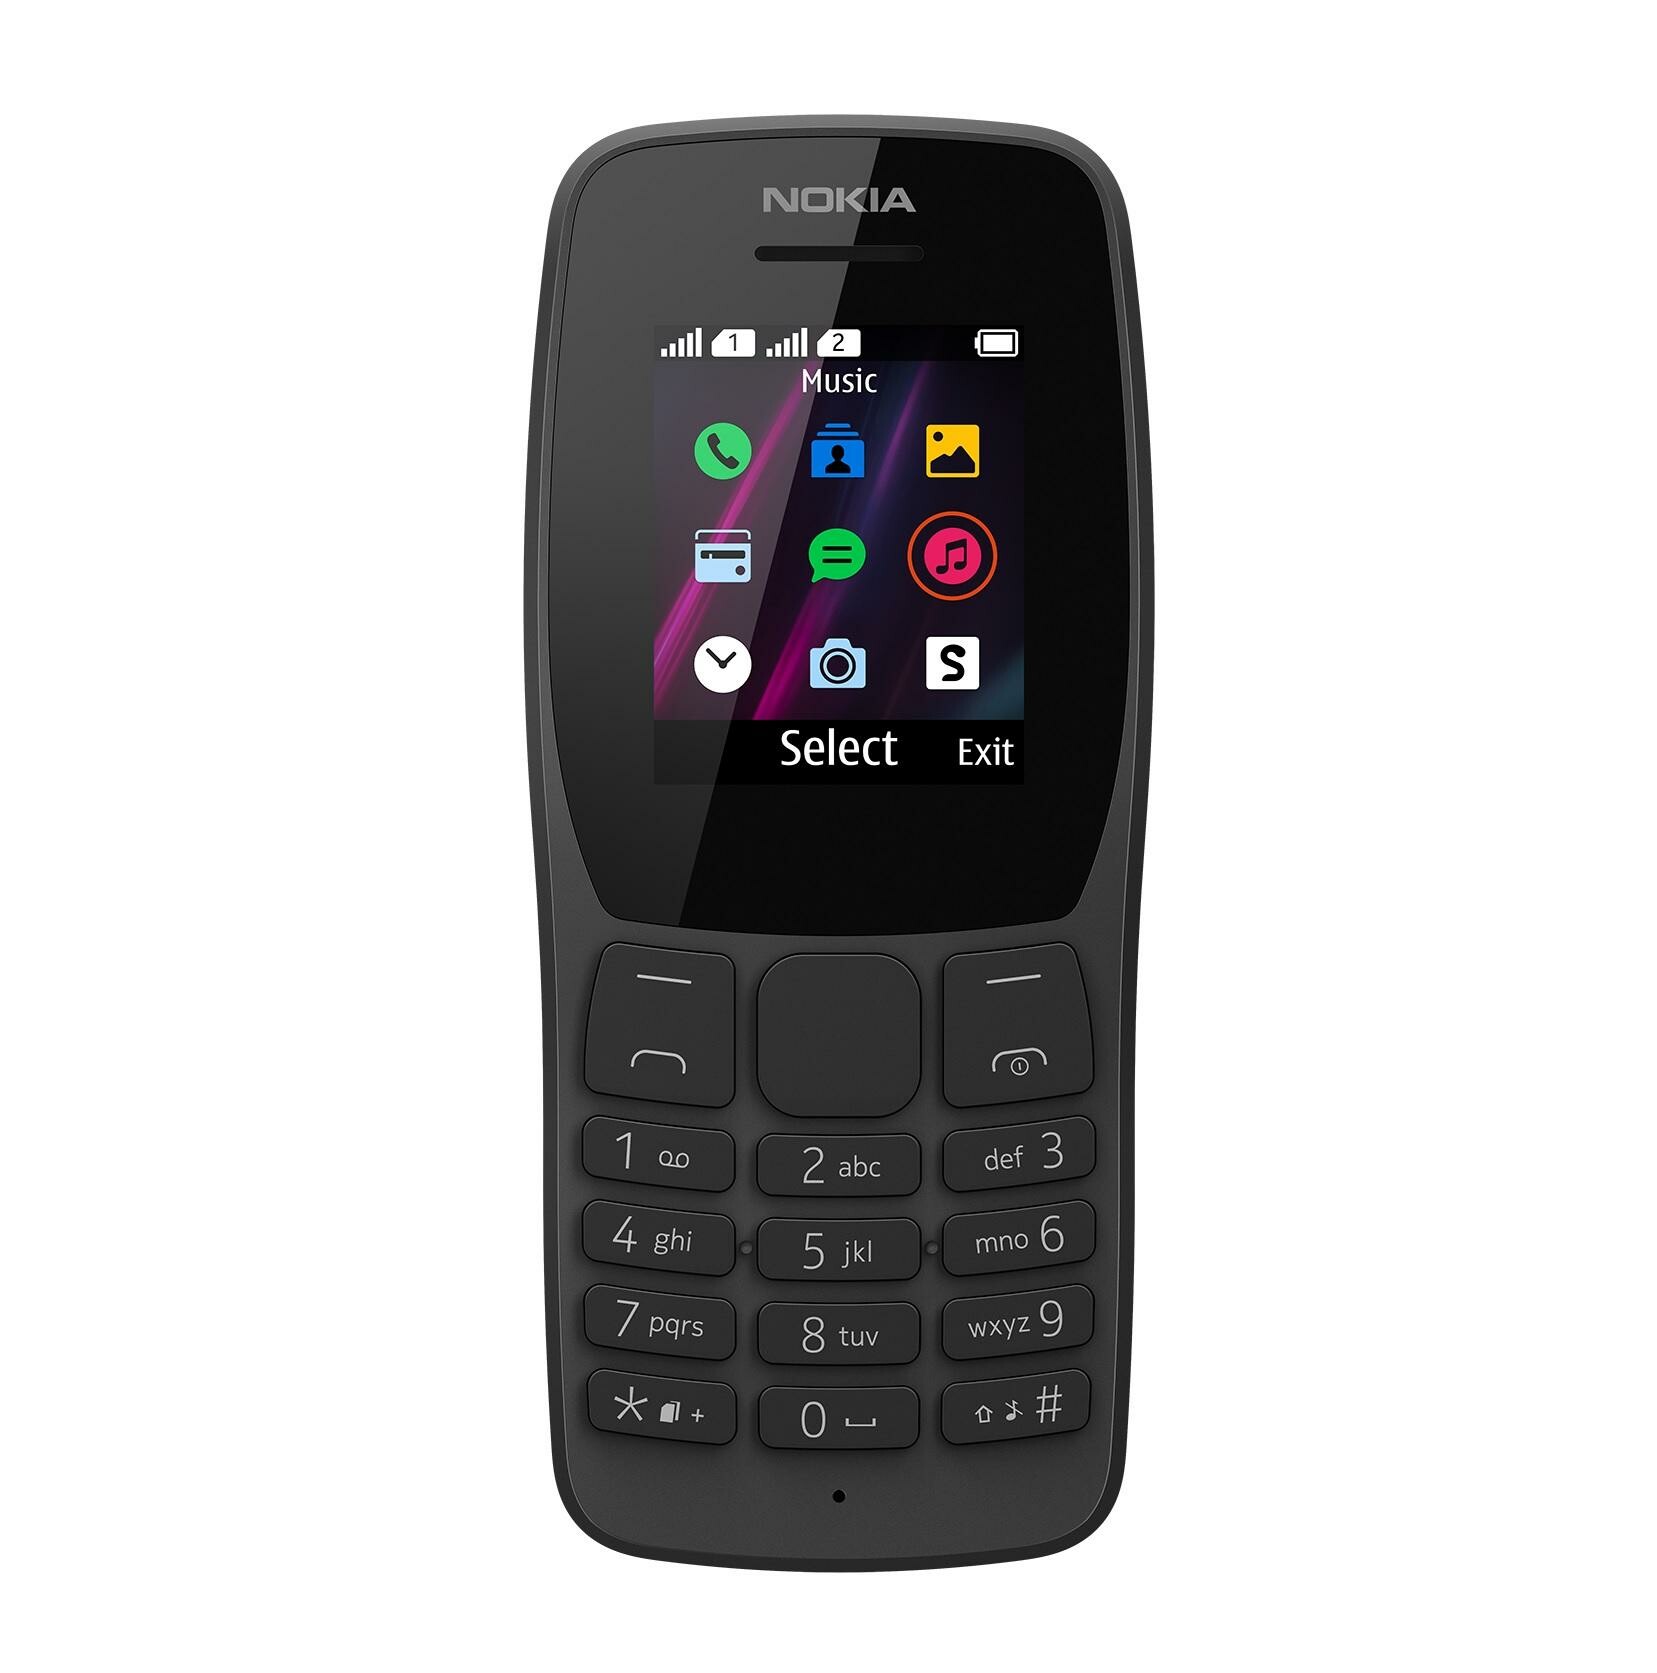 HMD Global trouxe um celular básico como antigamente, o Nokia 110